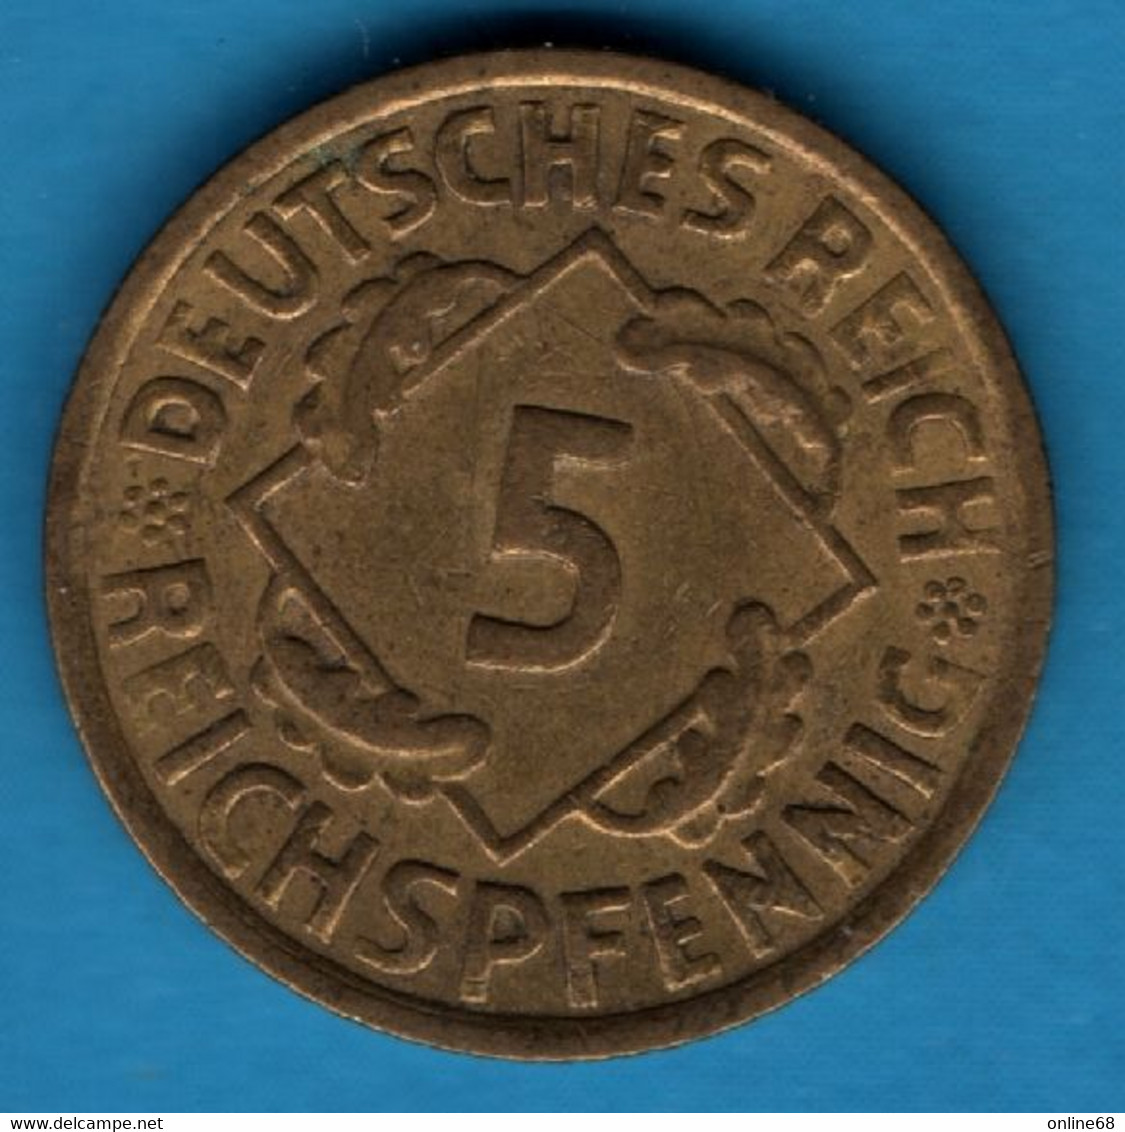 DEUTSCHES REICH 5 Reichspfennig 1936 A KM# 39 - 5 Reichspfennig